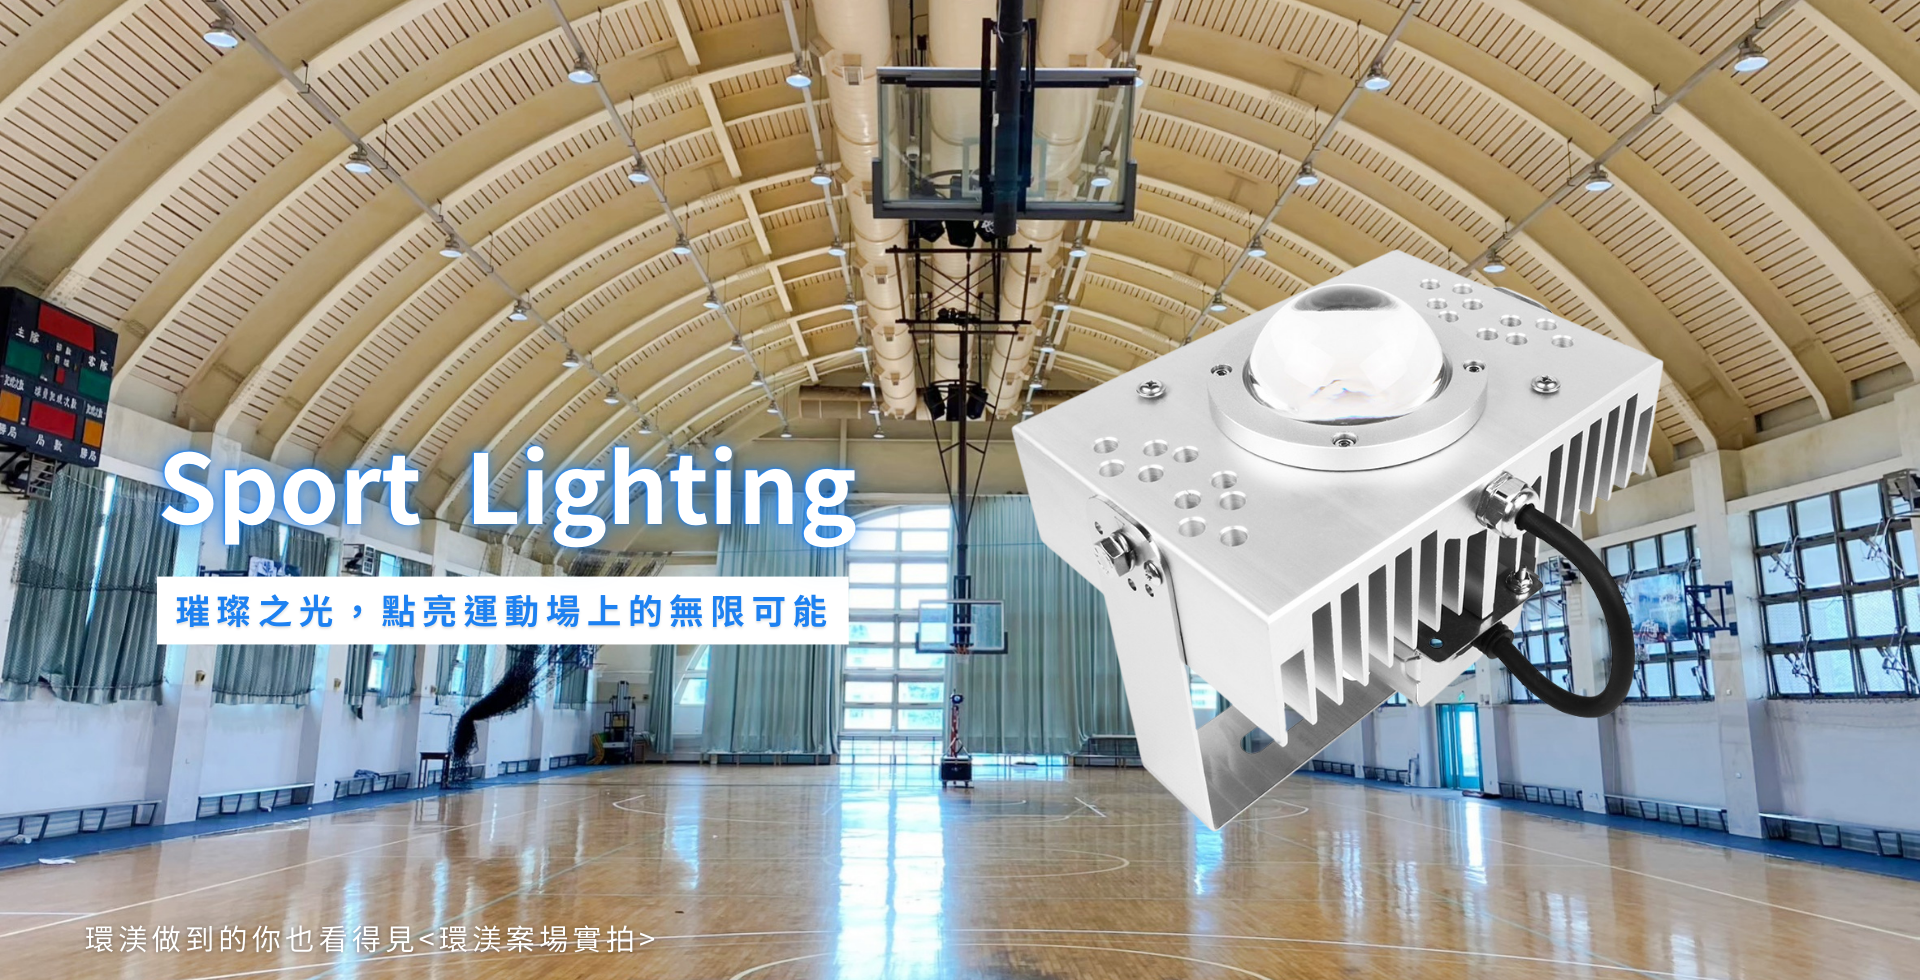 環渼節能 LED燈 - 公眾場所照明 - Public Lighting - 公眾場所照明使用LED節能燈具,最佳空間體驗